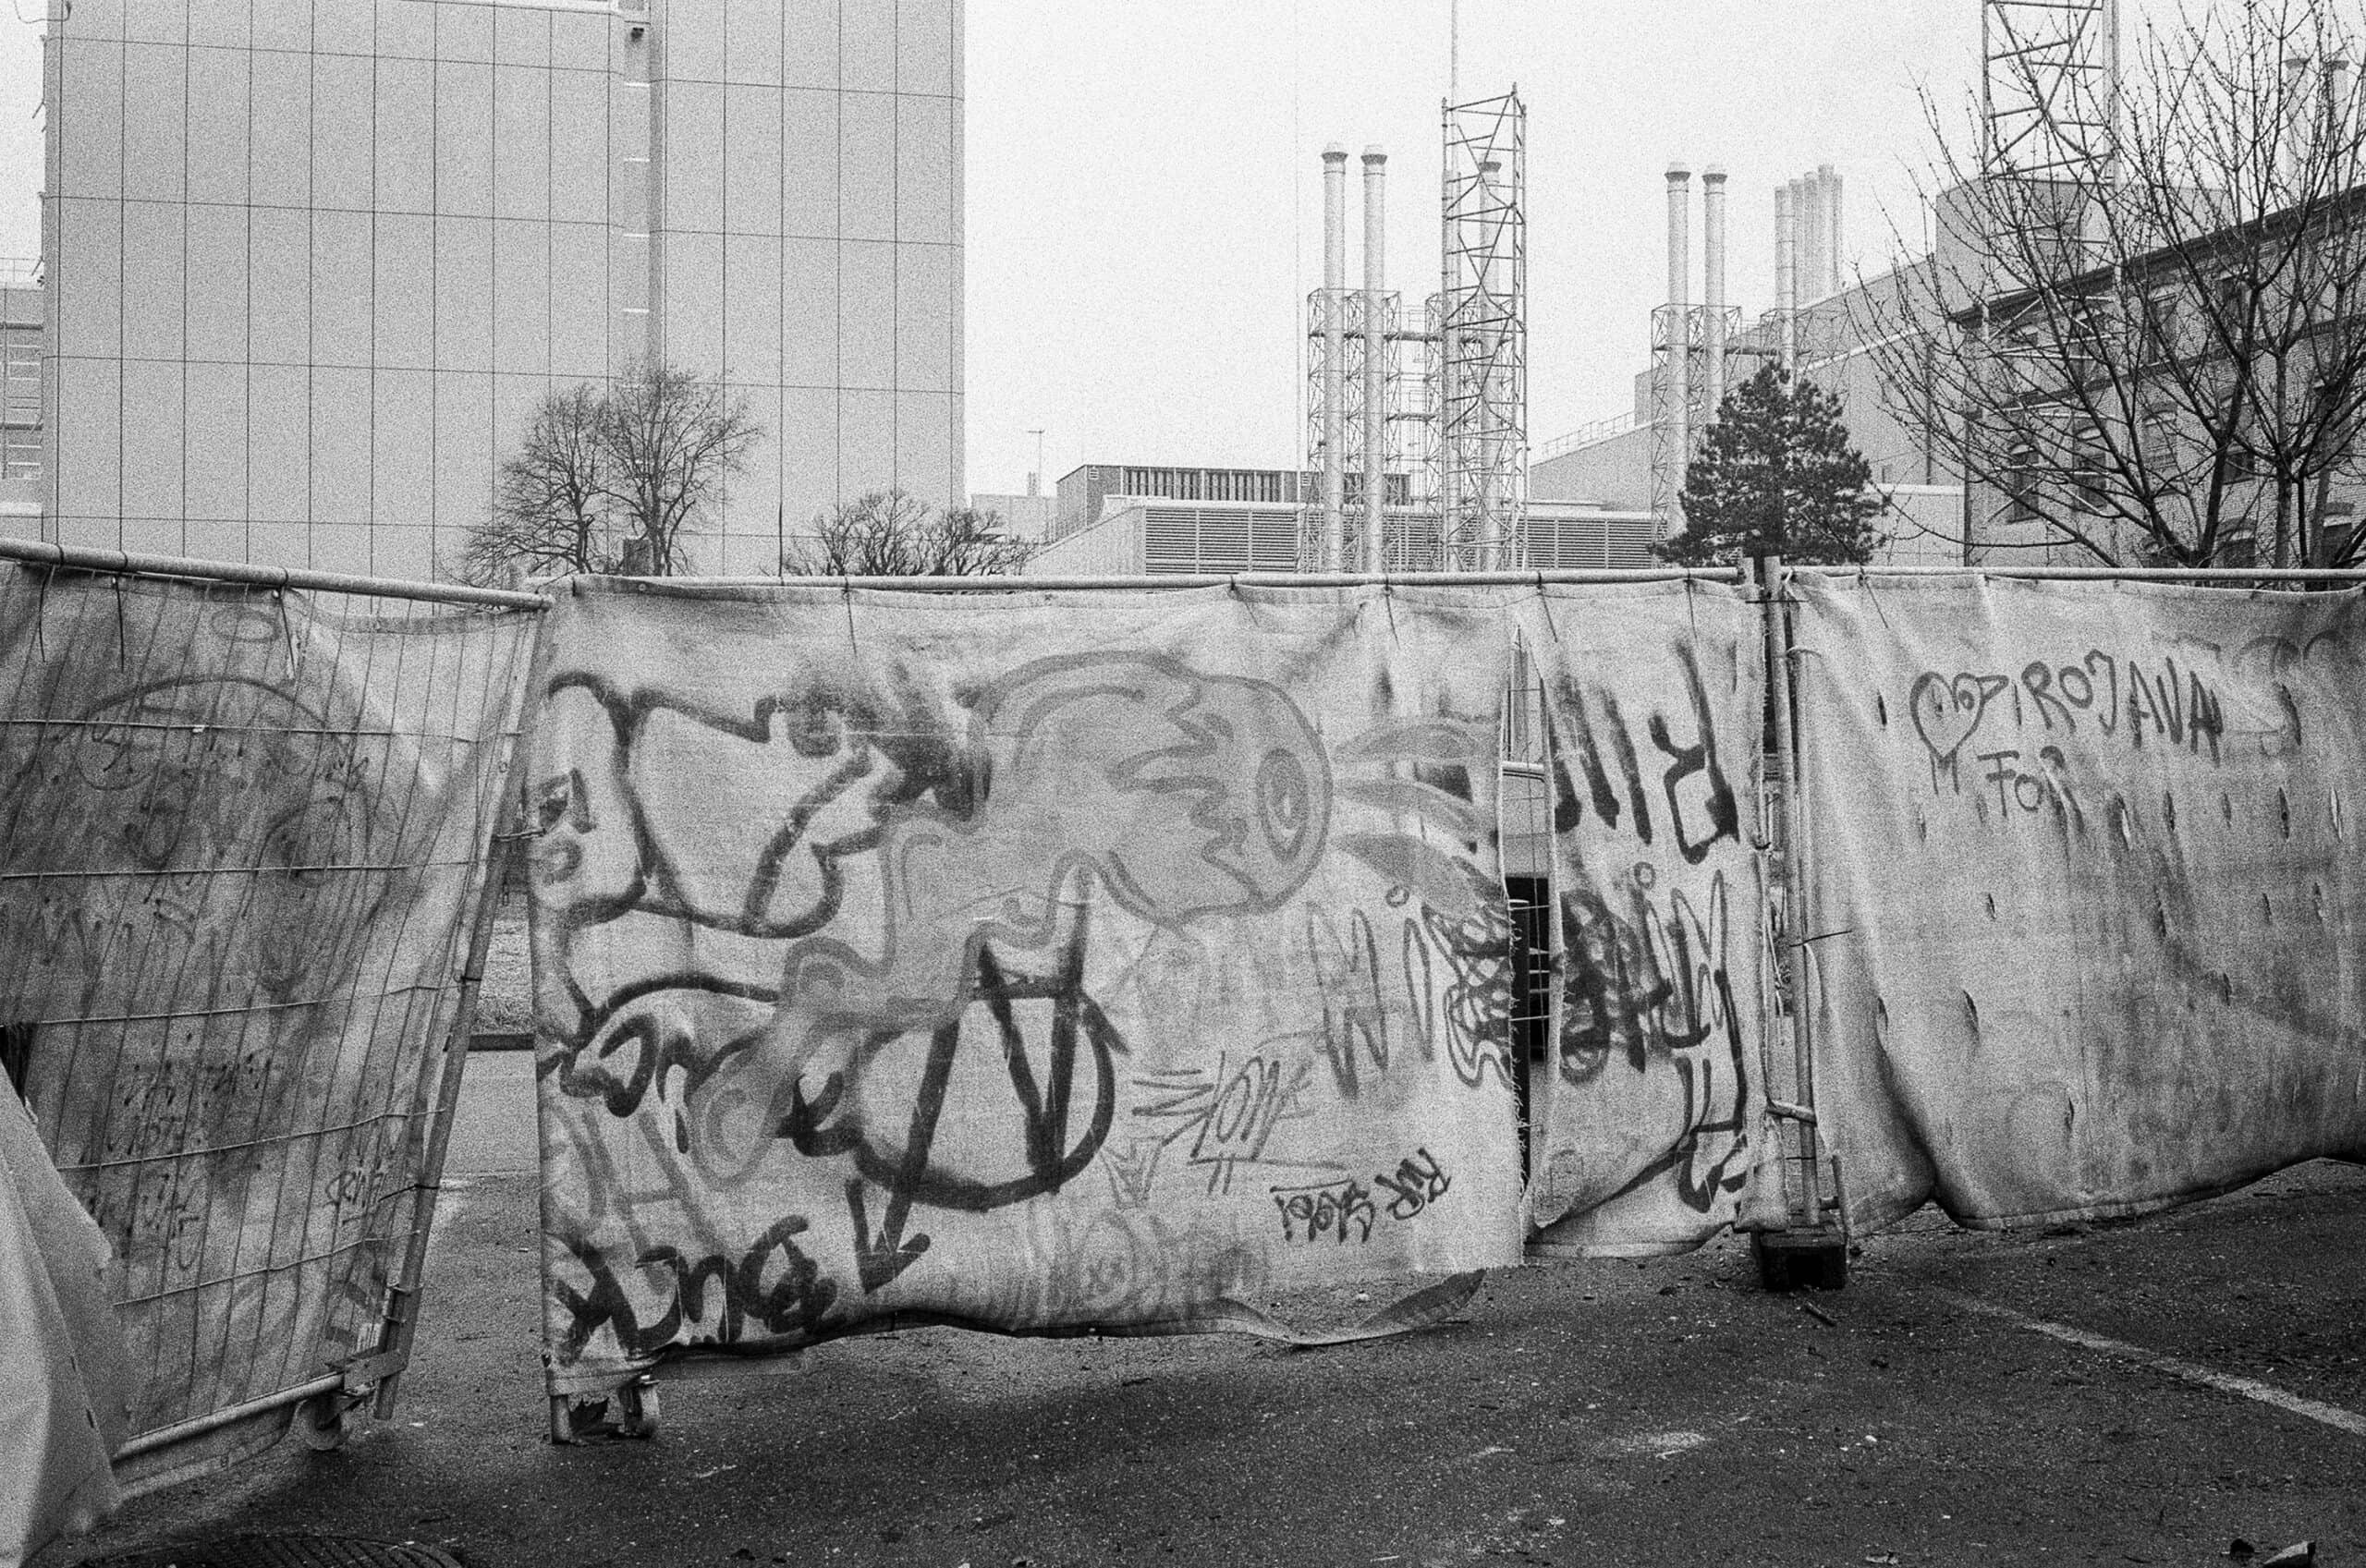 Mit Graffiti besprühte Bauzäune trennen das Areal gegen hinten ab.